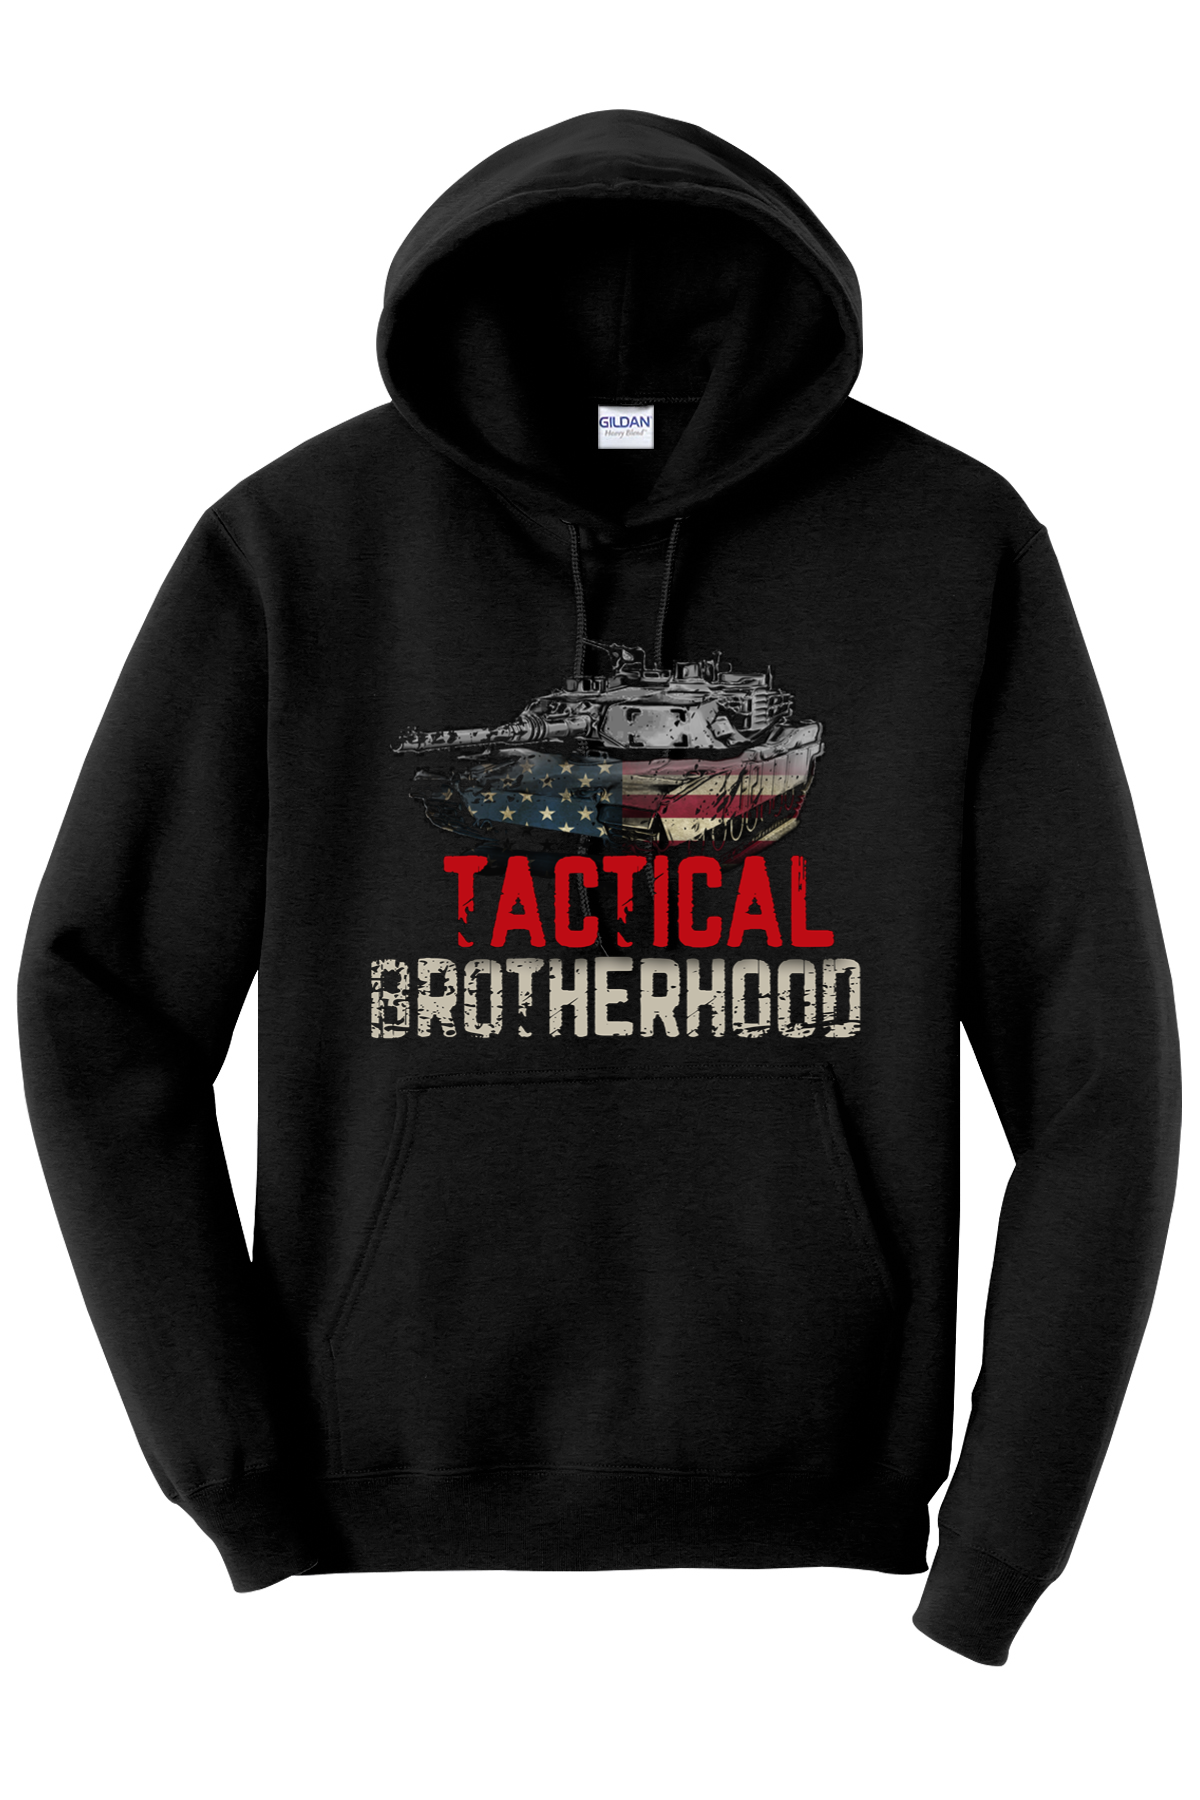 M1 Abrams - Tactical Brotherhood Hoodie